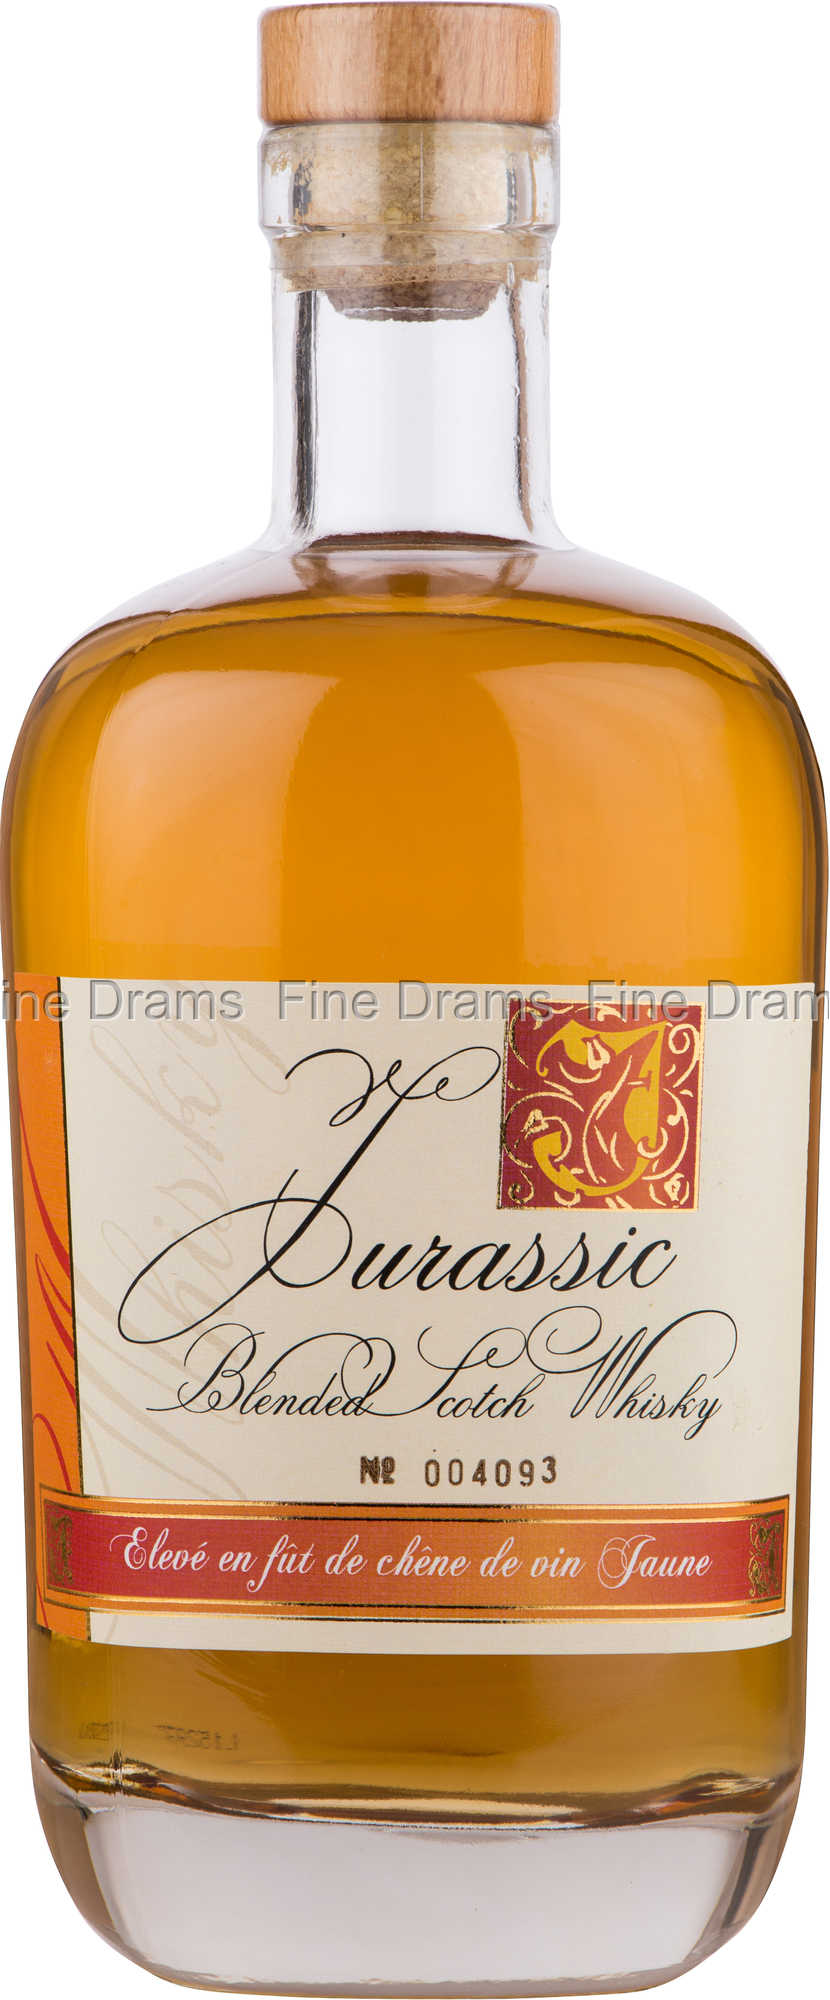 https://images.finedrams.com/image/27634-large-1483300522/jurassic-blended-whisky-vin-jaune.jpg